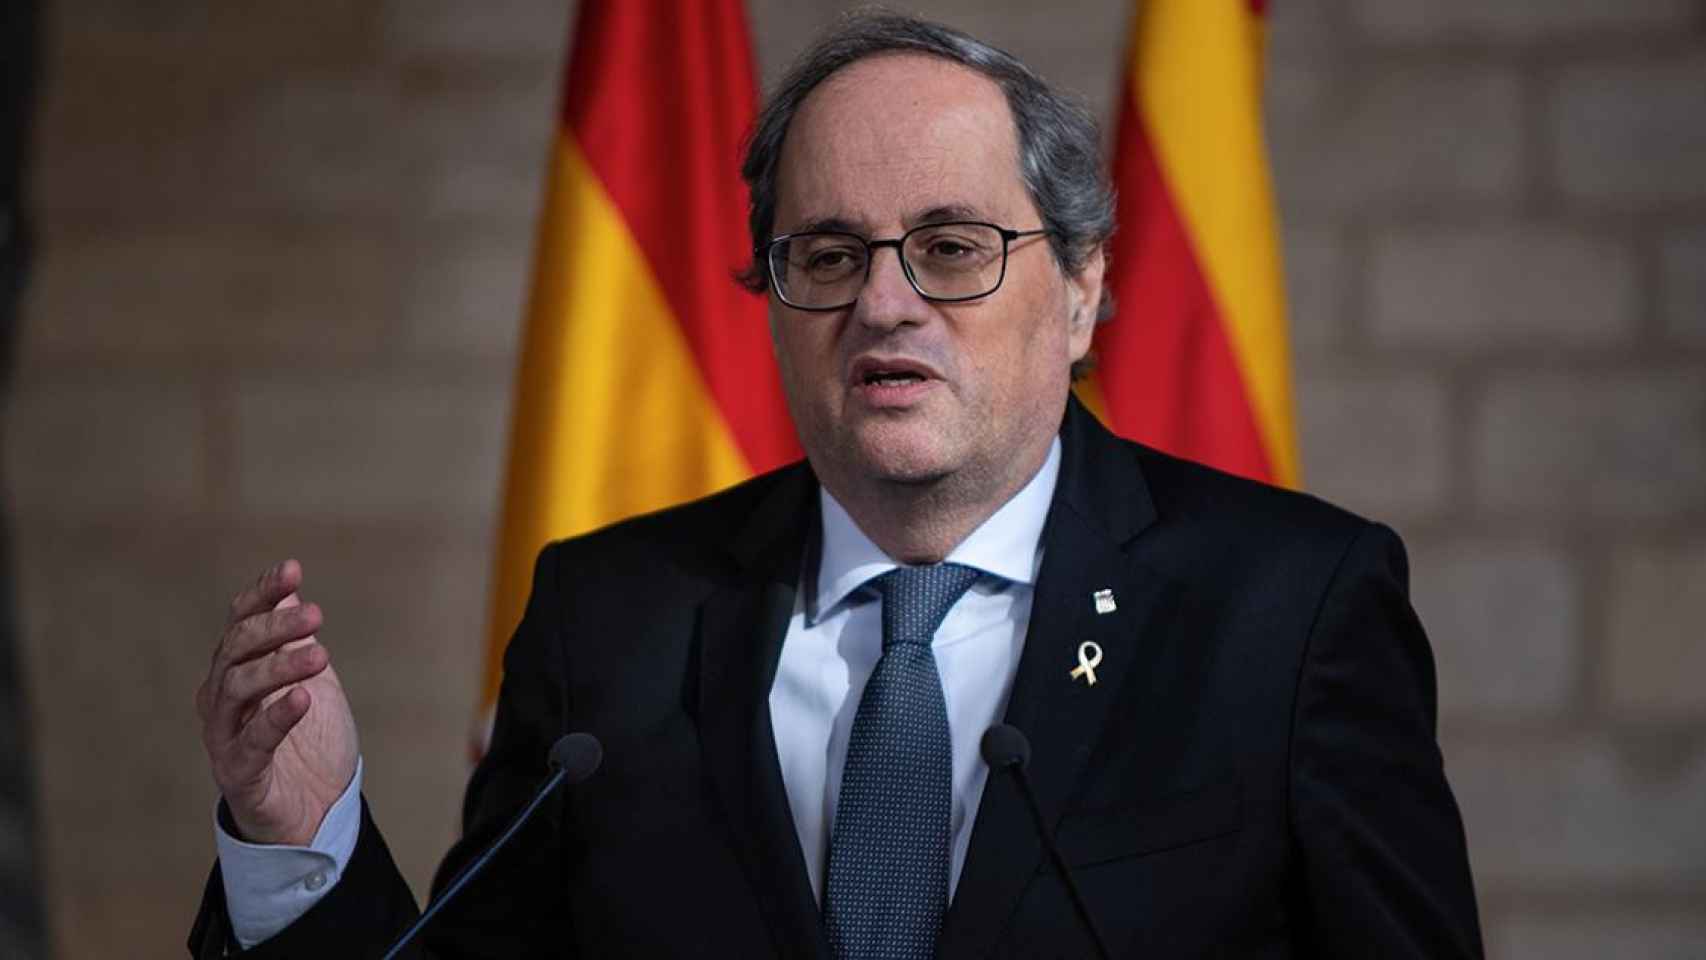 El presidente de la Generalitat, Quim Torra, en declaraciones ante los medios de comunicación / EP